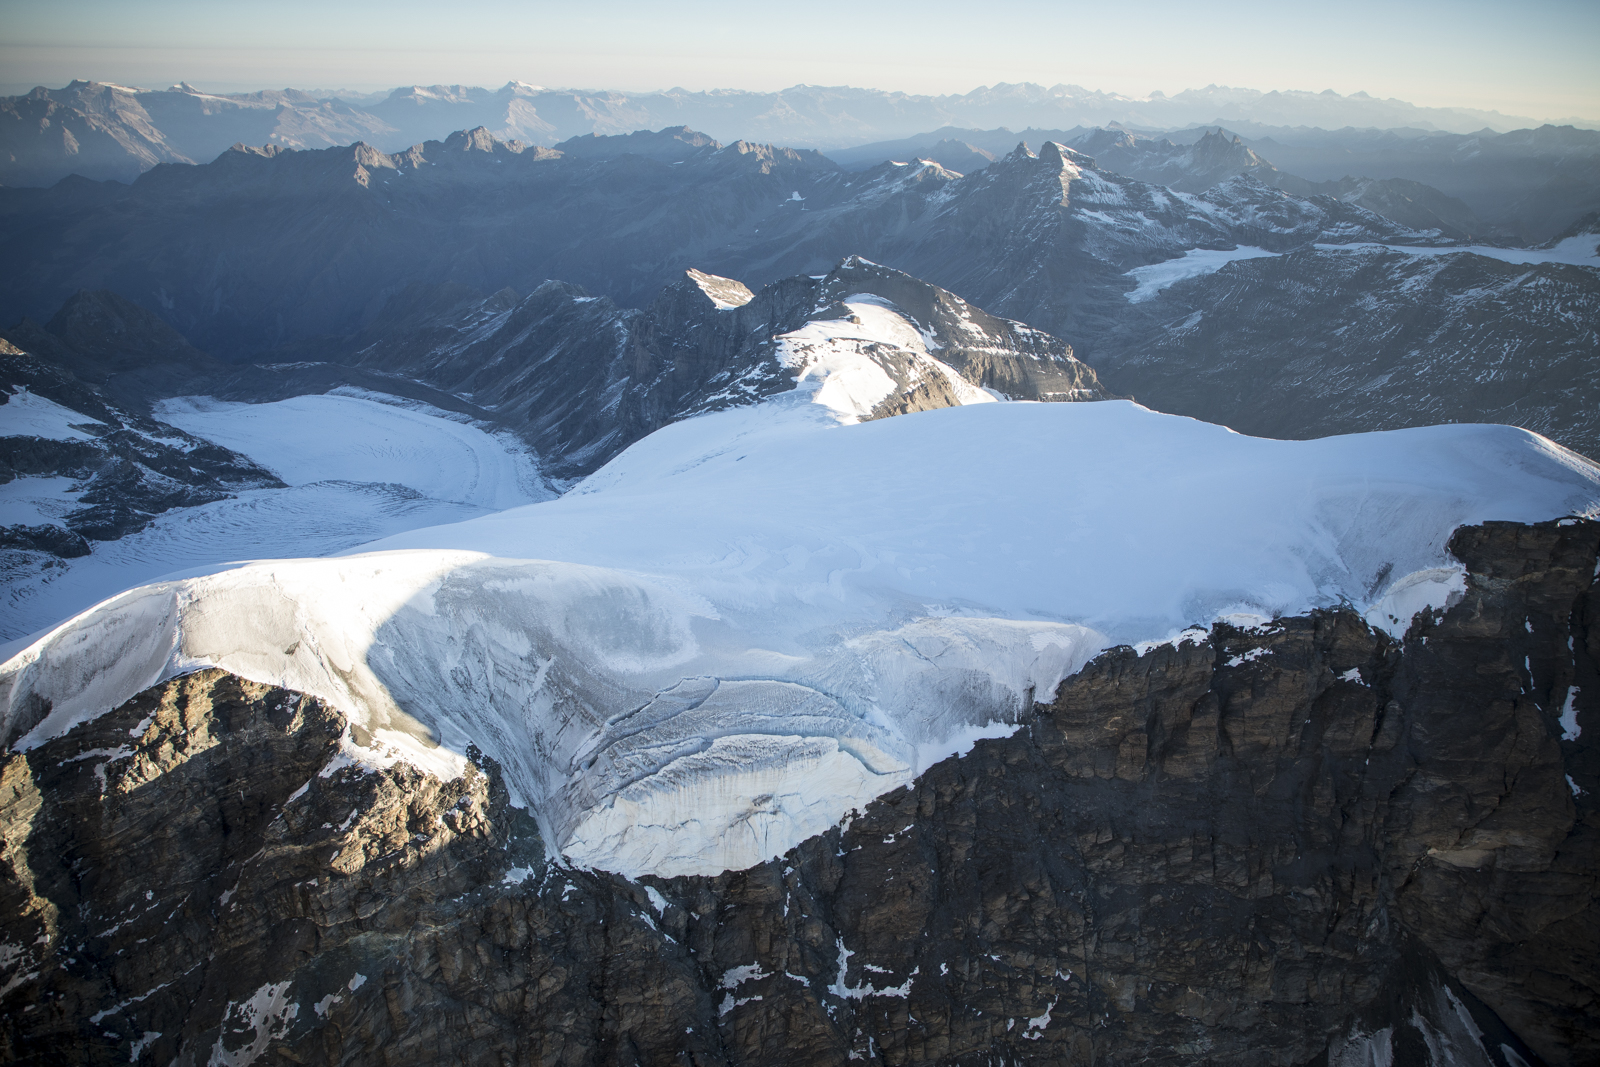 Il drone in volo sul ghiacciaio [video]